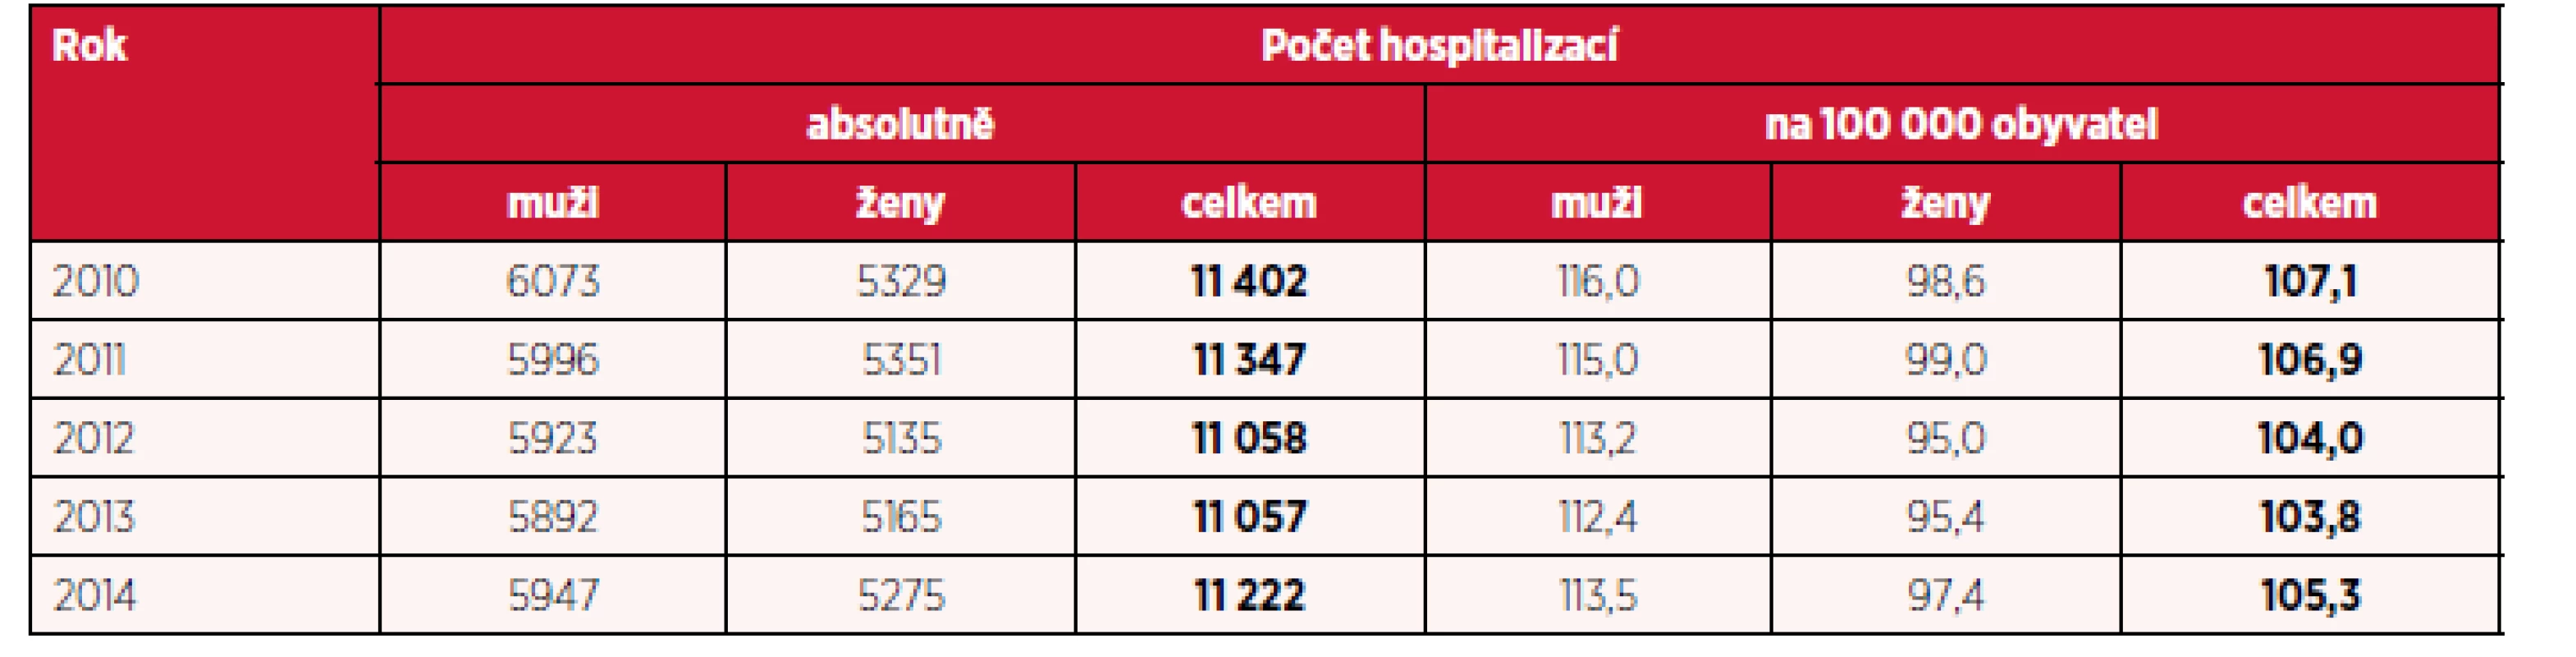 Počet hospitalizací pro dg. F20–F29 a přepočet na 100 tisíc obyvatel podle pohlaví v letech 2010–2014